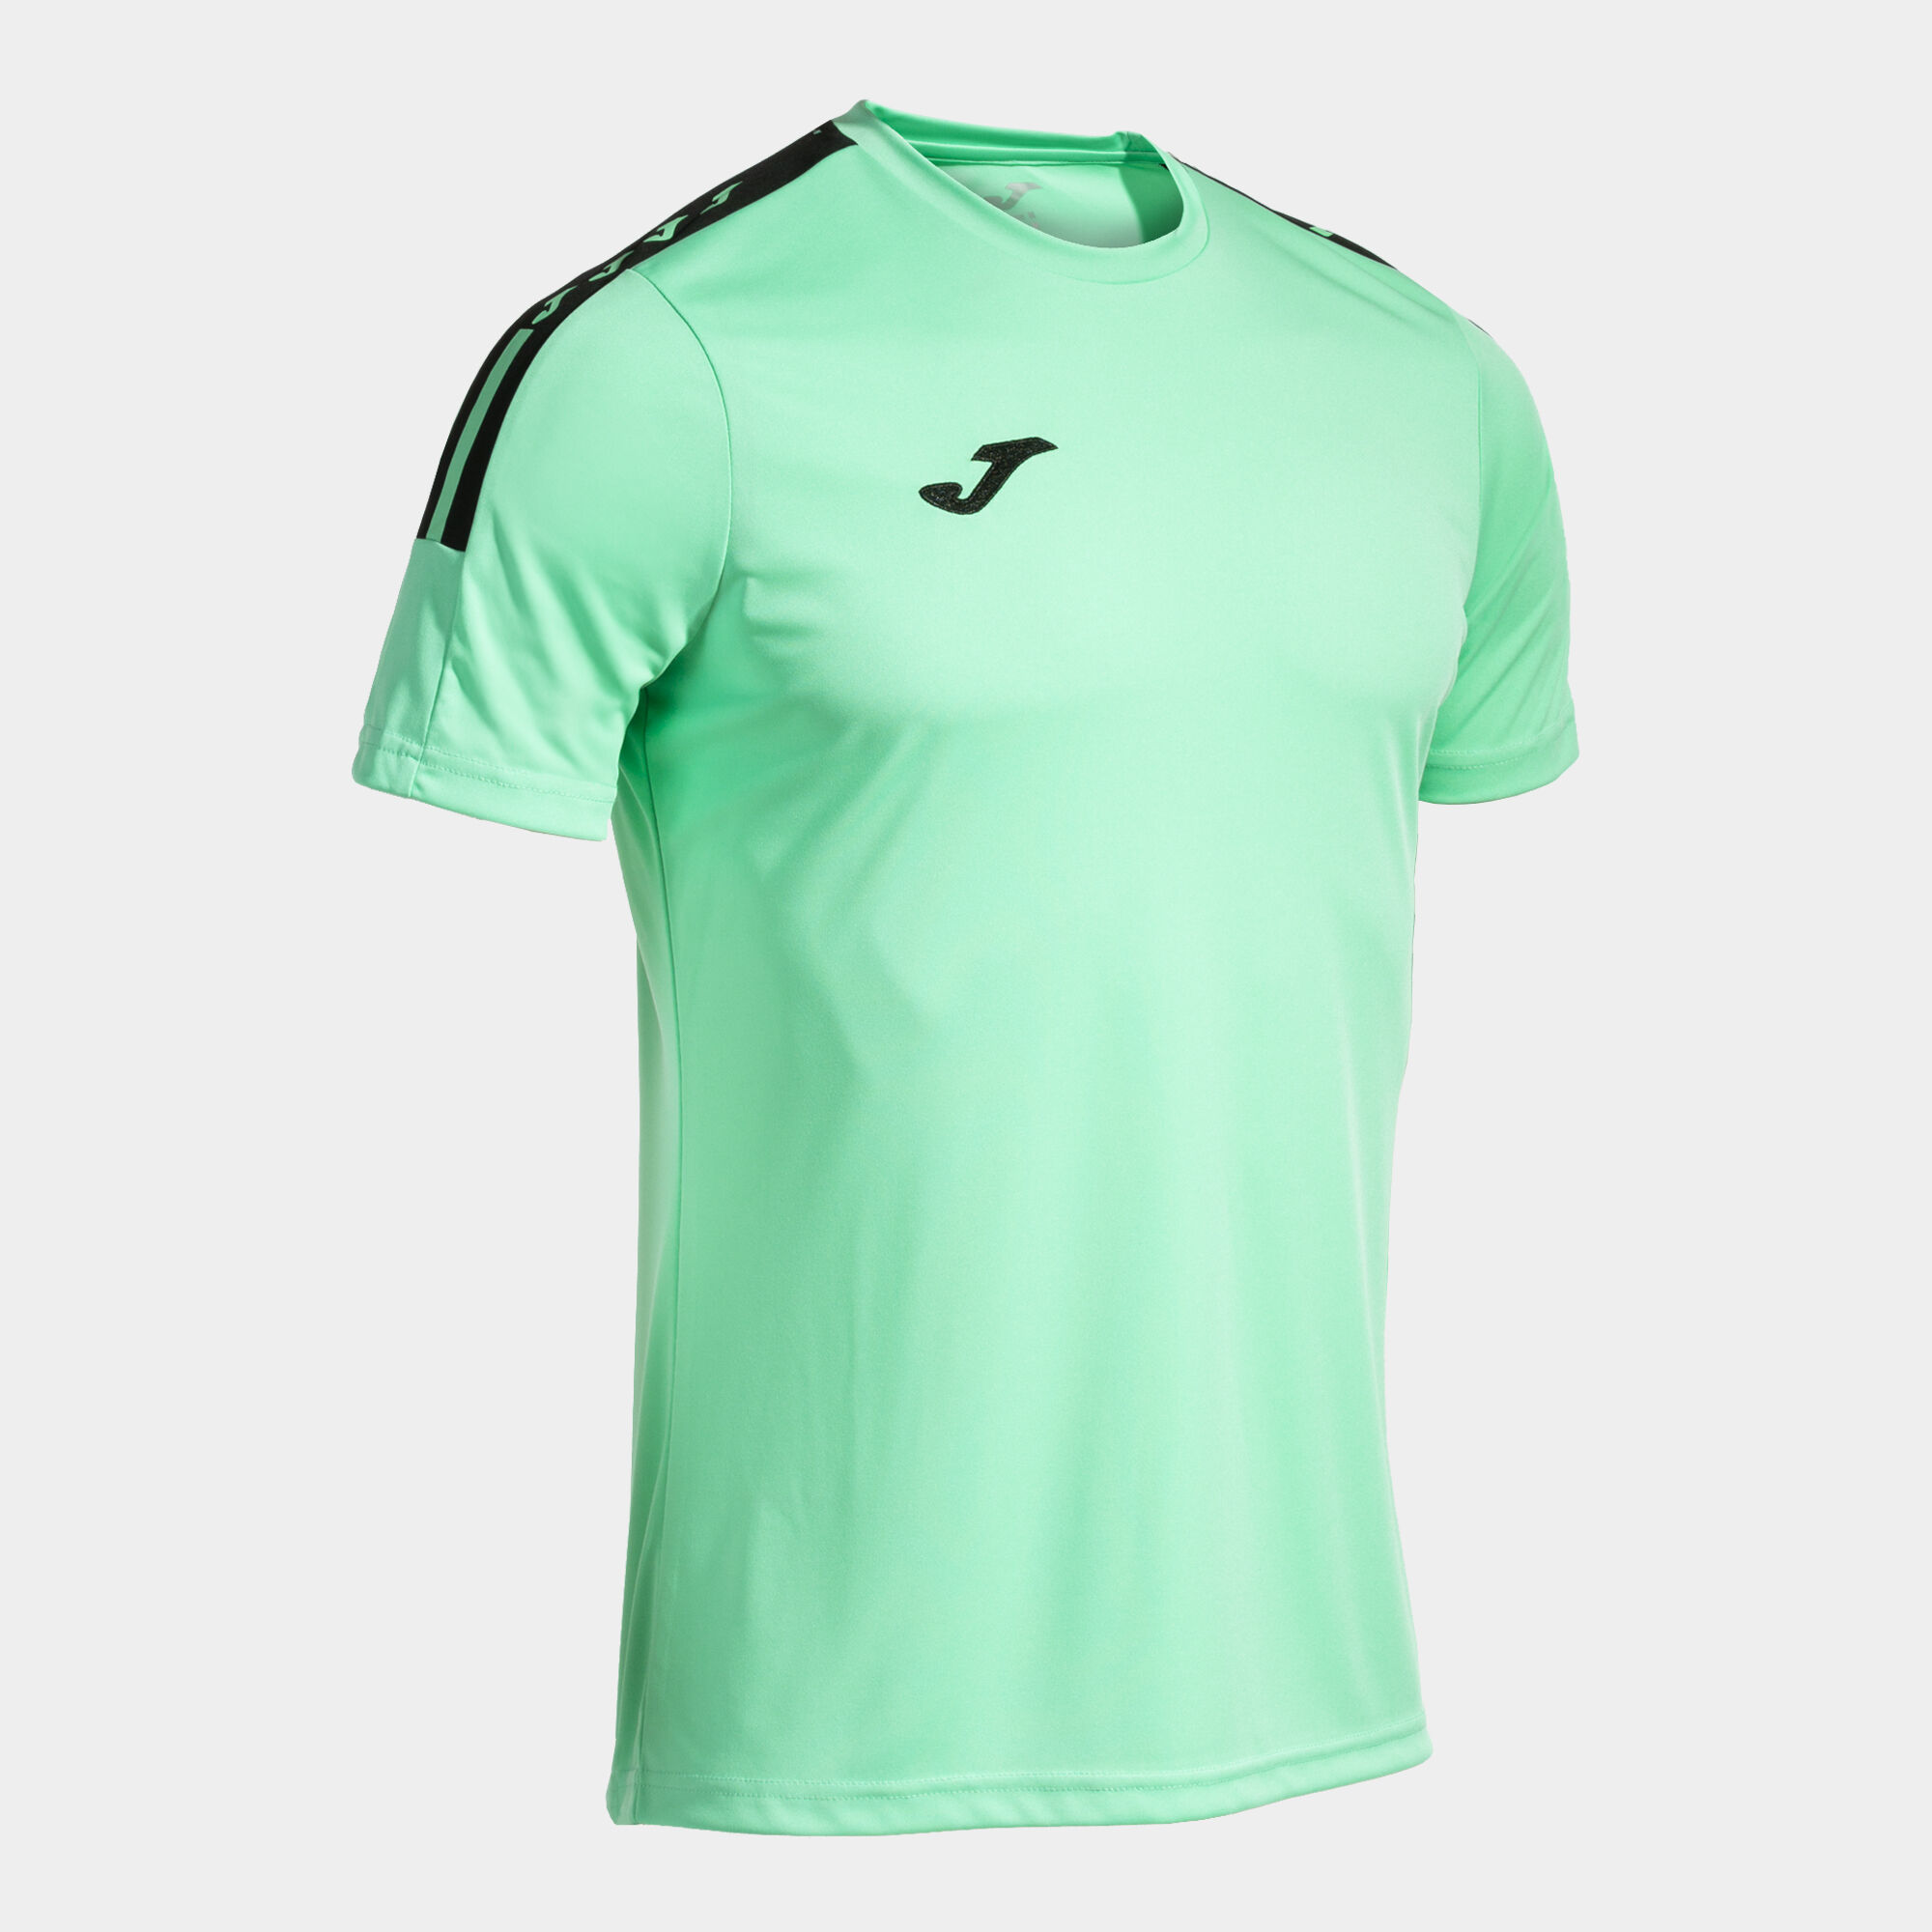 Shirt short sleeve man Olimpiada green black